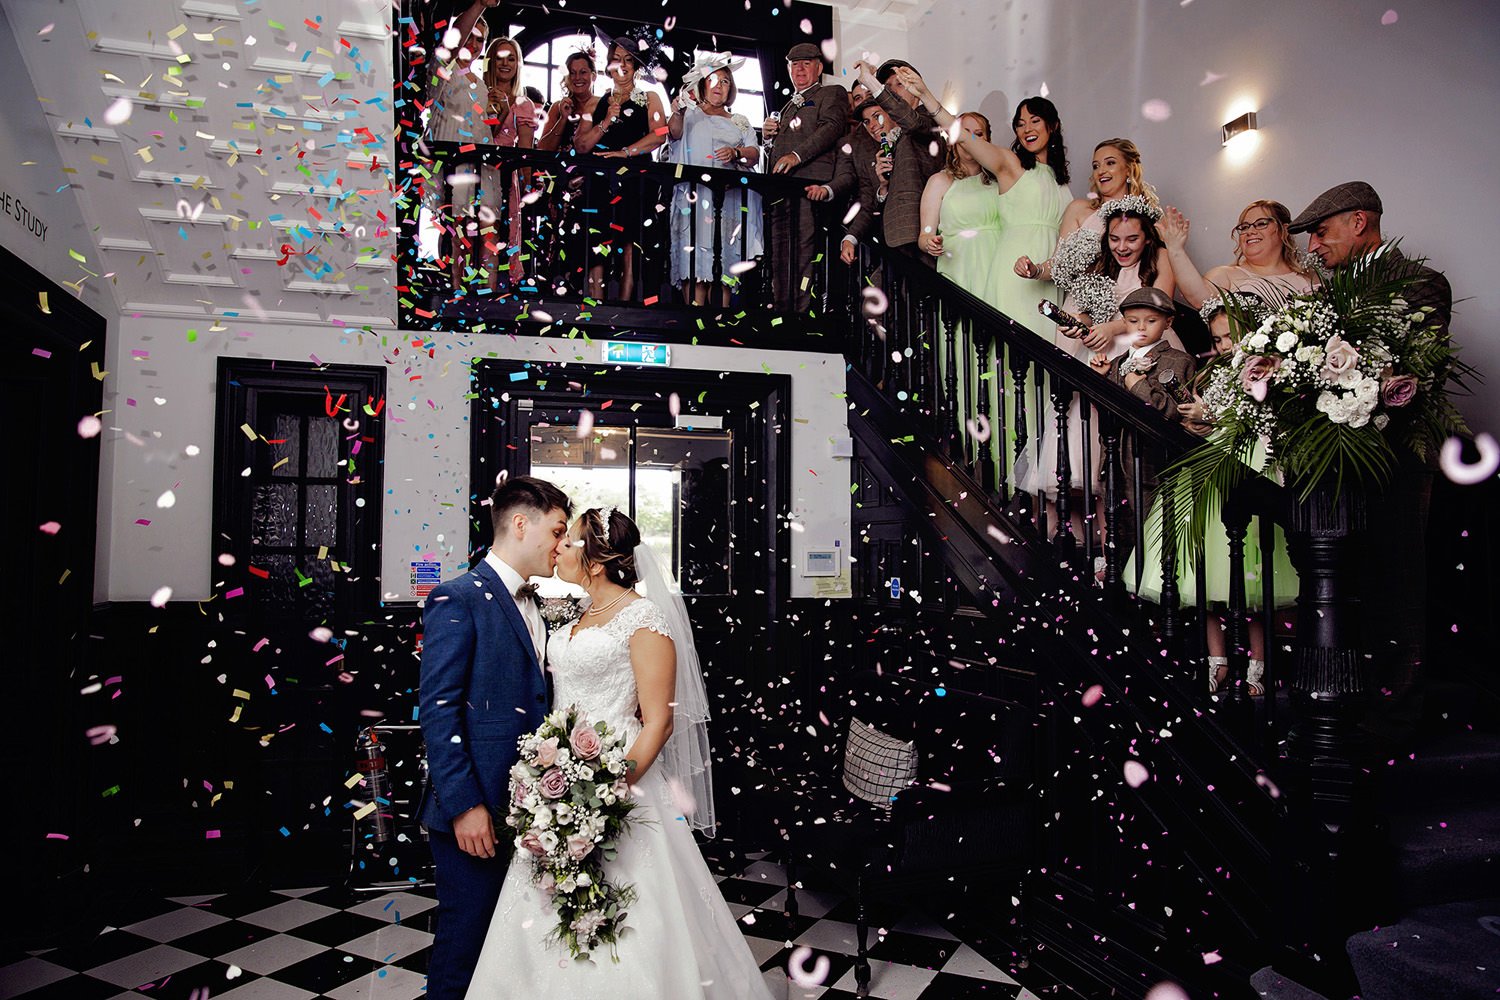 Wedding venues allowing indoor confetti